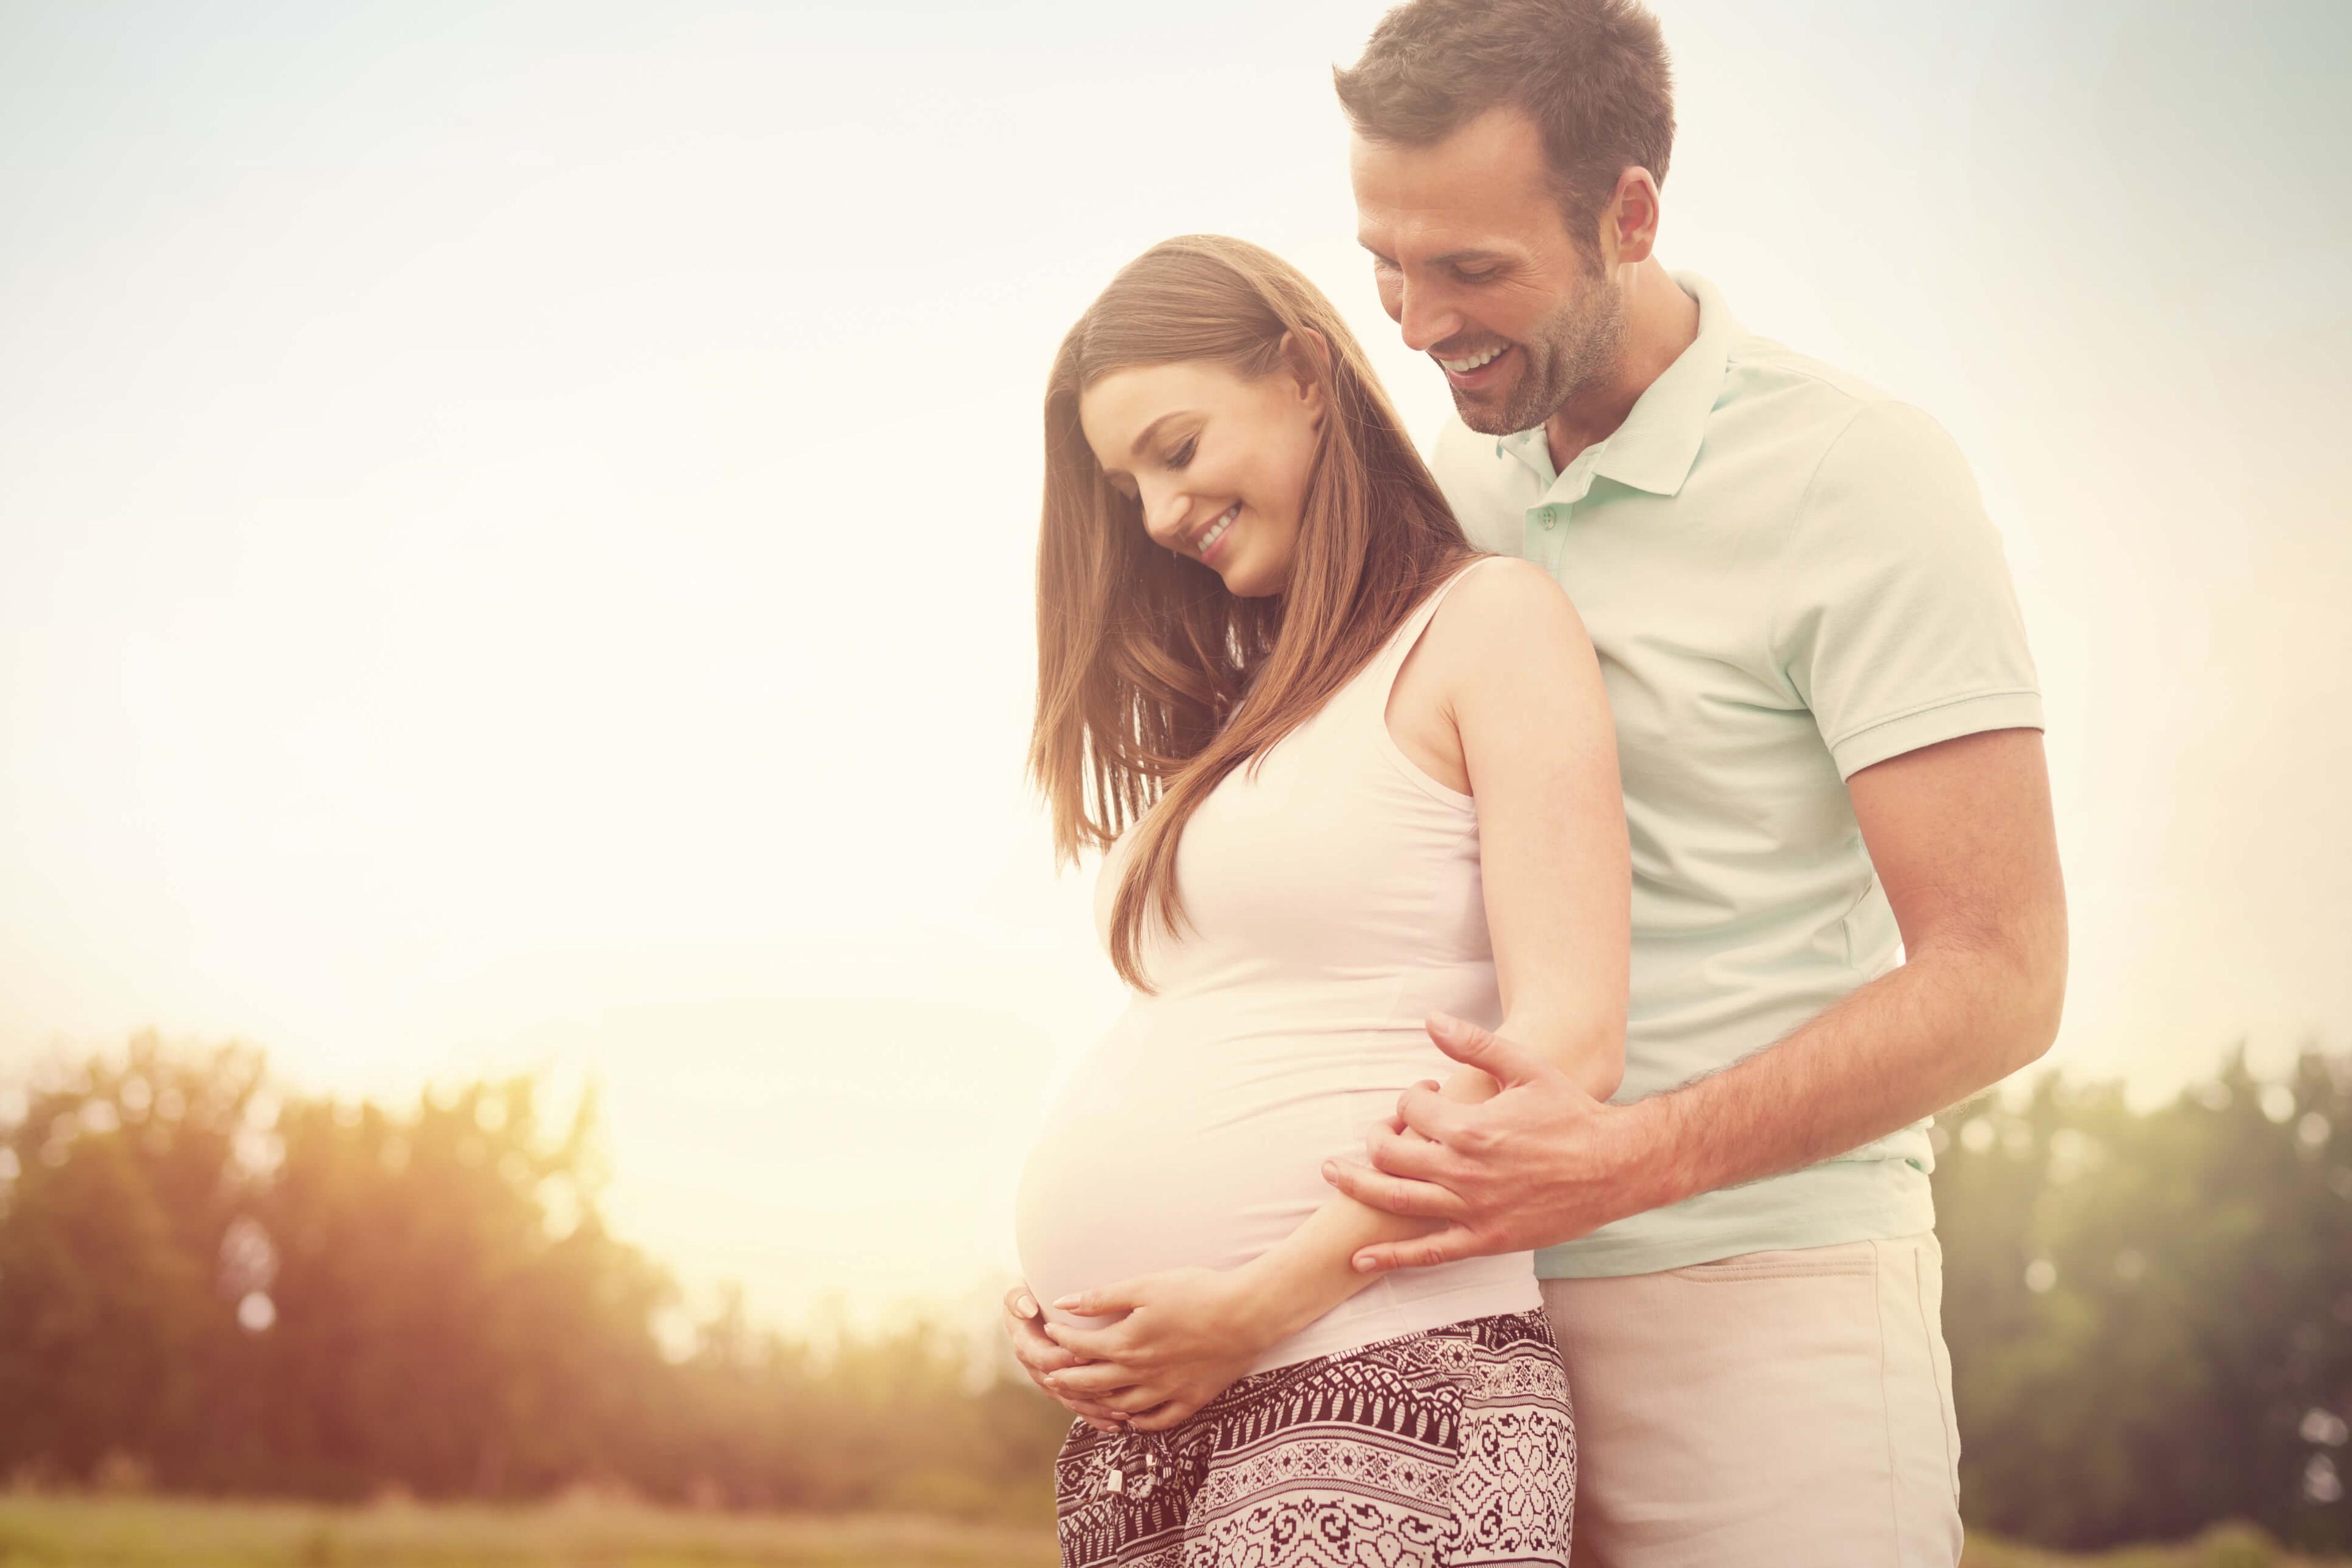 6 Fertility Myths Debunked